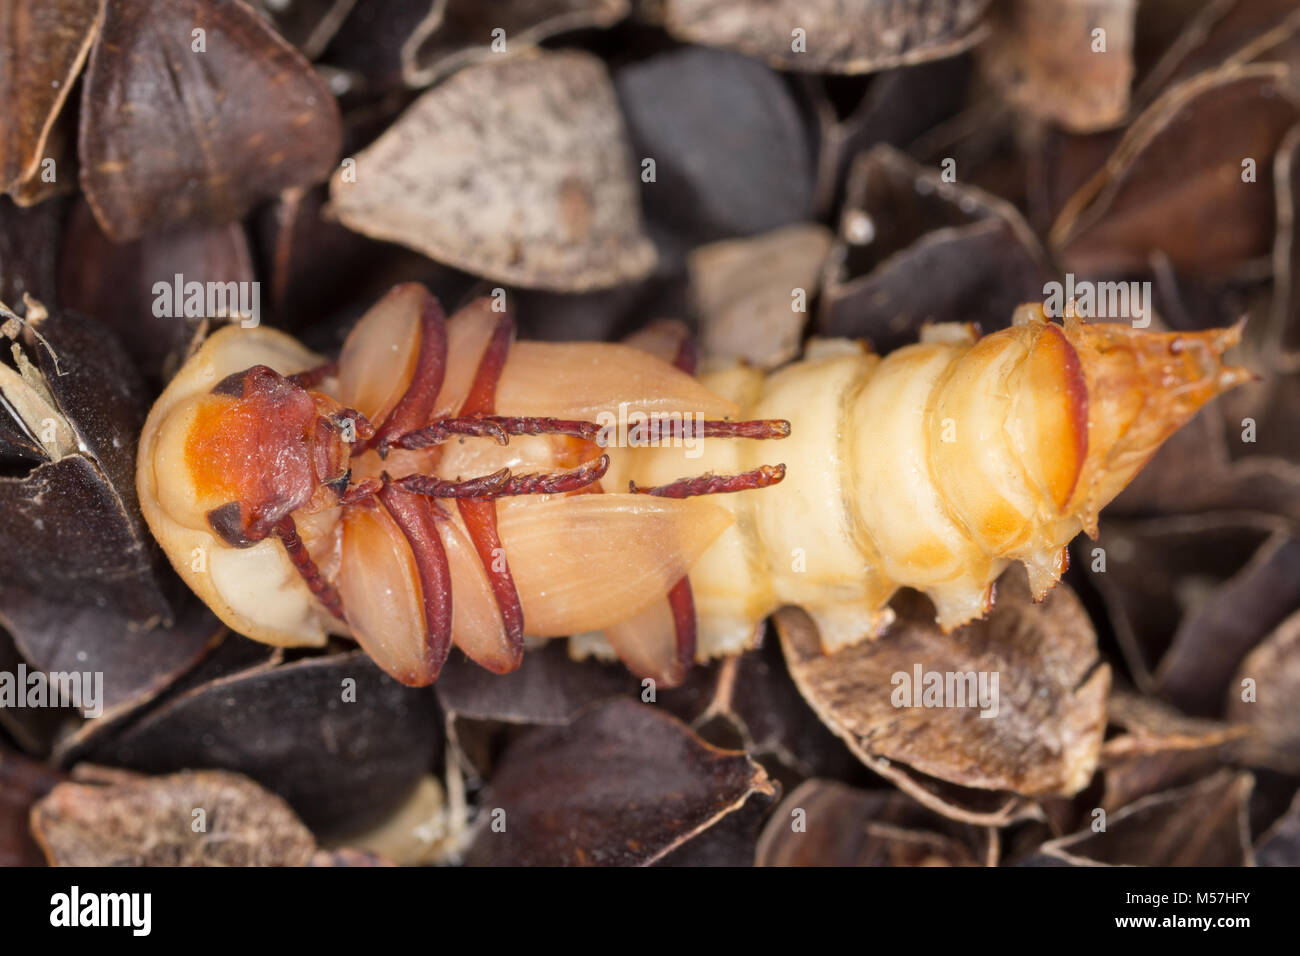 Nymphe de la Beetle, ténébrion meunier Tenebrio molitor, une espèce de darkling beetle ravageur des céréales et des produits ainsi que des produits d'accueil, sur le sarrasin Banque D'Images